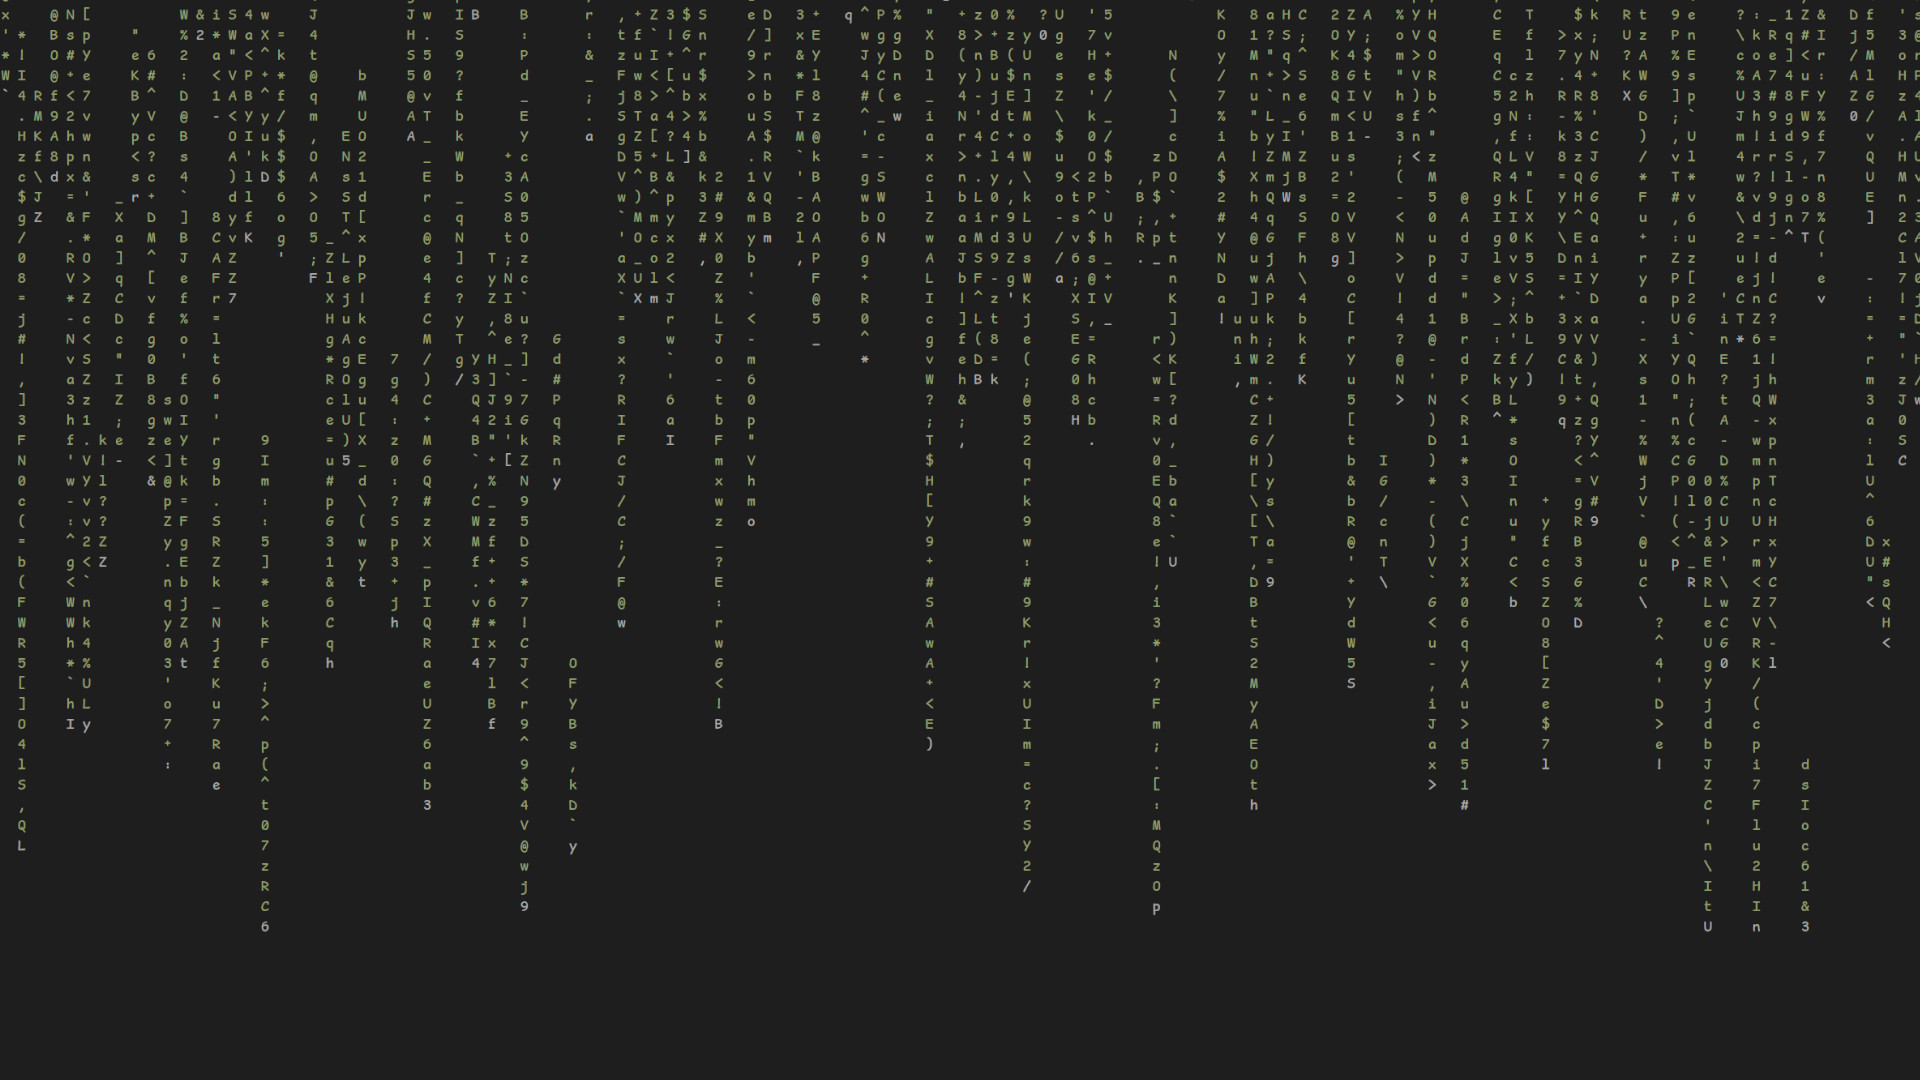 Das Programm cmatrix im Linux Terminal, grüne Buchstaben und Zahlen im Matrix-Stil